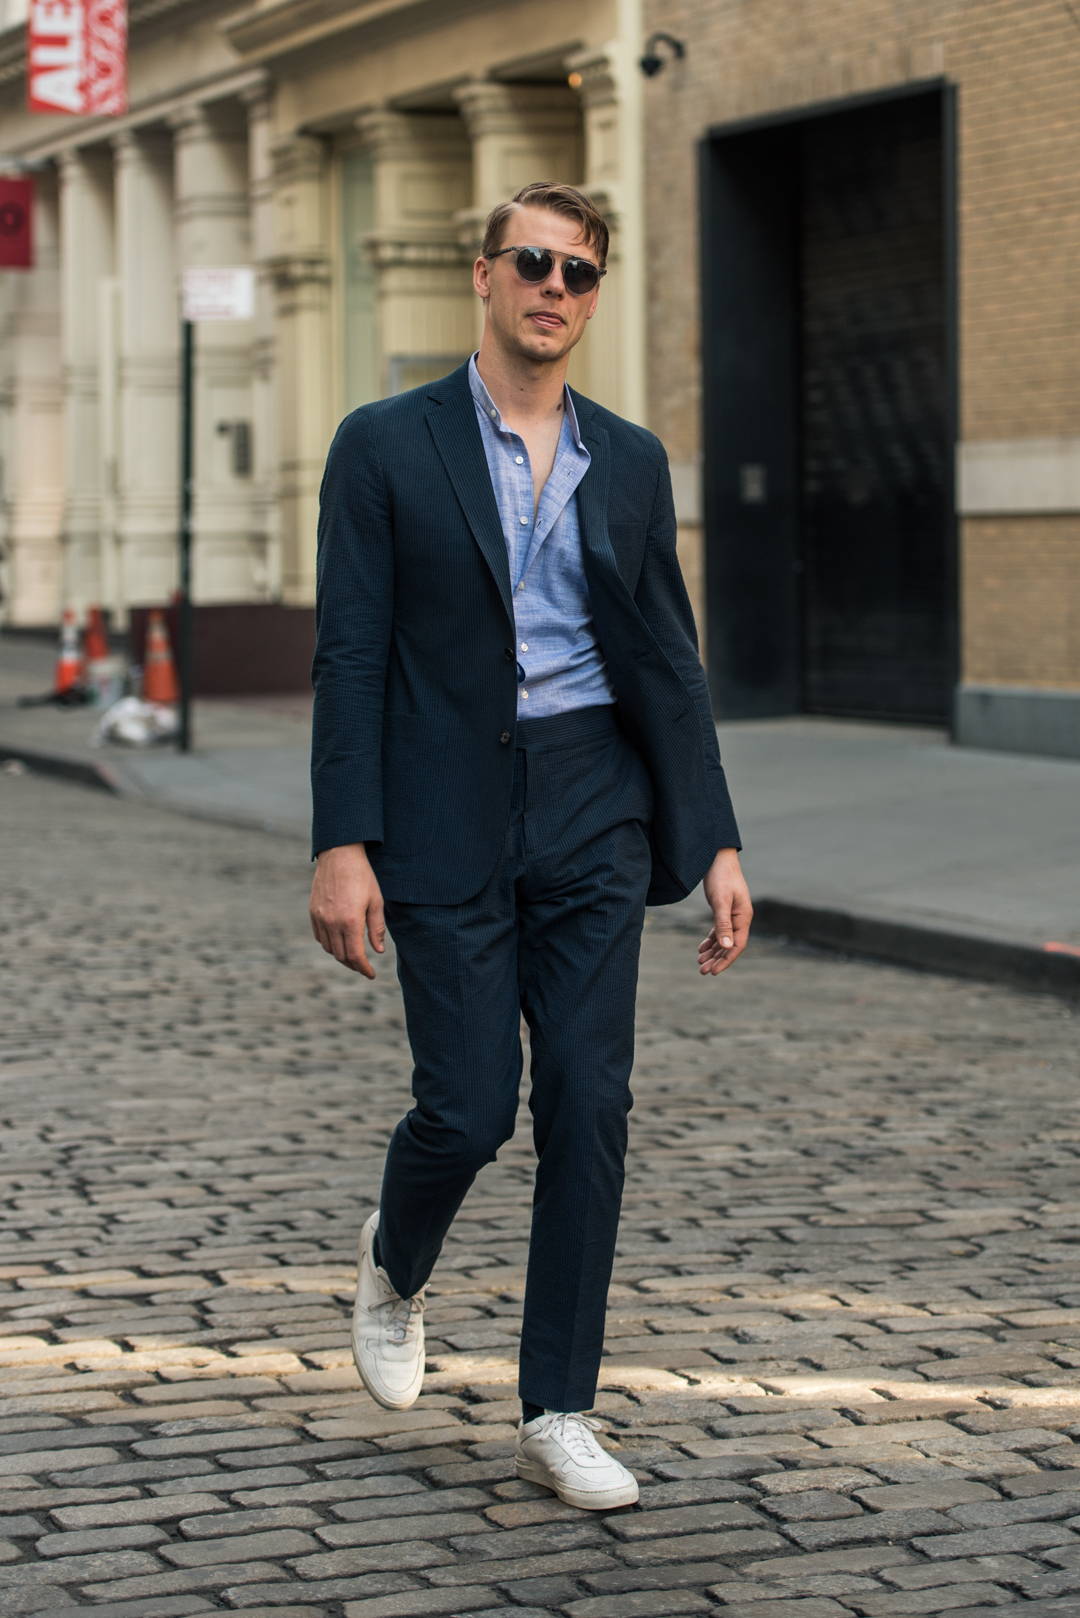 Articles of Style | 1 Piece/3 Ways: Midnight Seersucker Suit